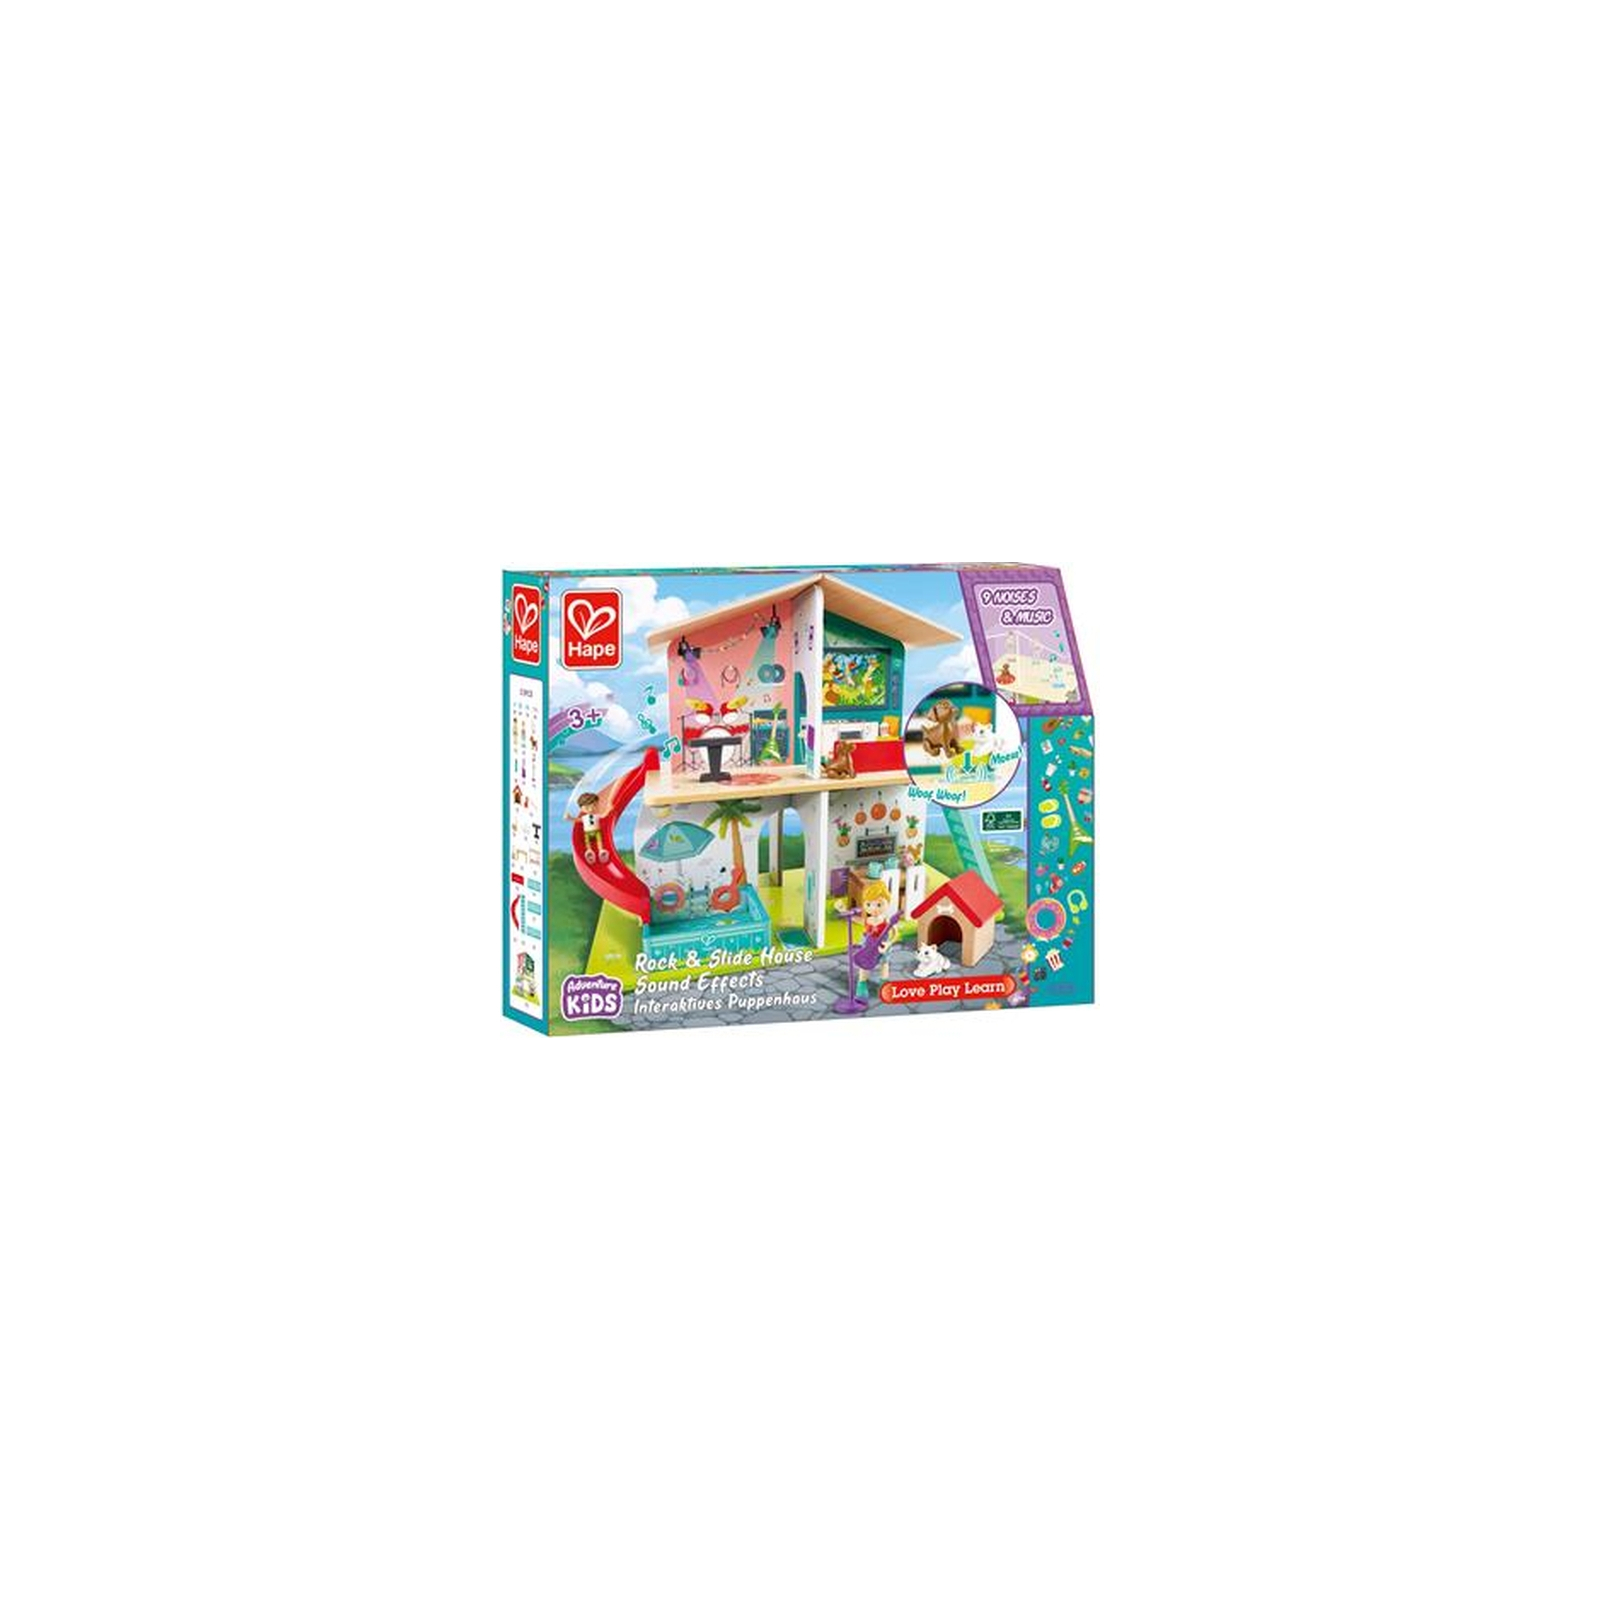 Игровой набор Hape Кукольный дом с горкой, мебелью и аксессуарами (E3411) изображение 7